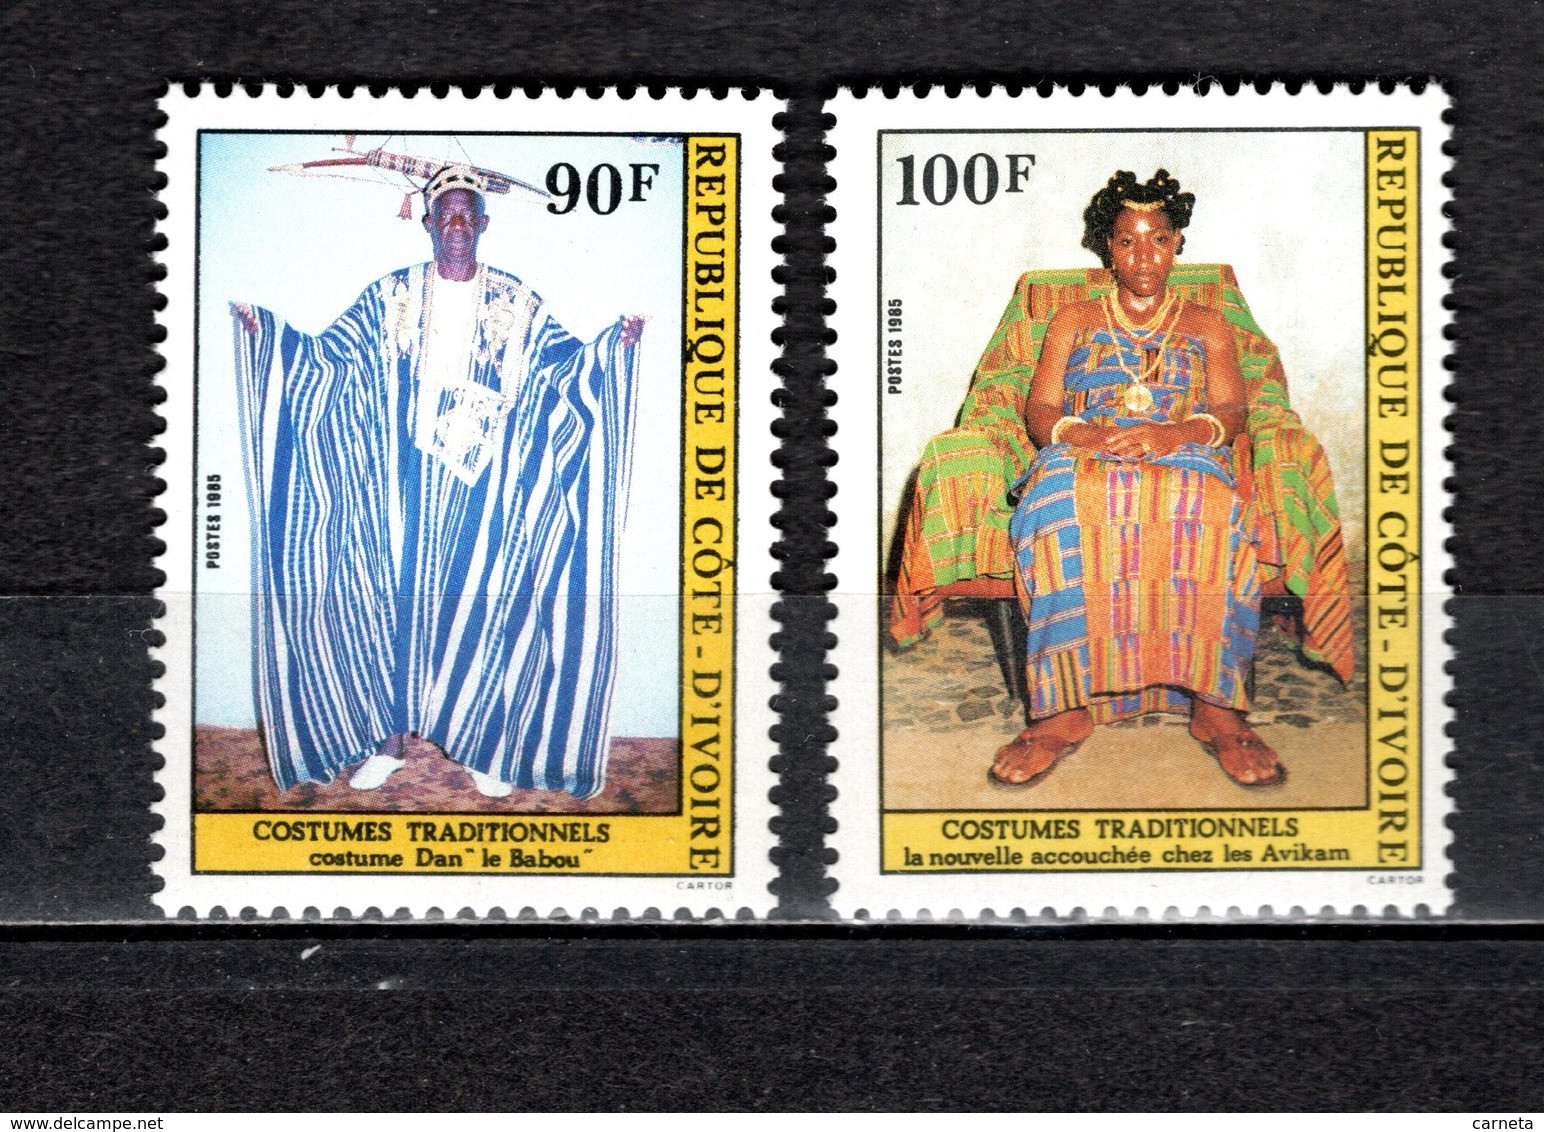 COTE D'IVOIRE N° 707 + 708  NEUFS SANS CHARNIERE COTE 3.00€   COSTUME - Côte D'Ivoire (1960-...)